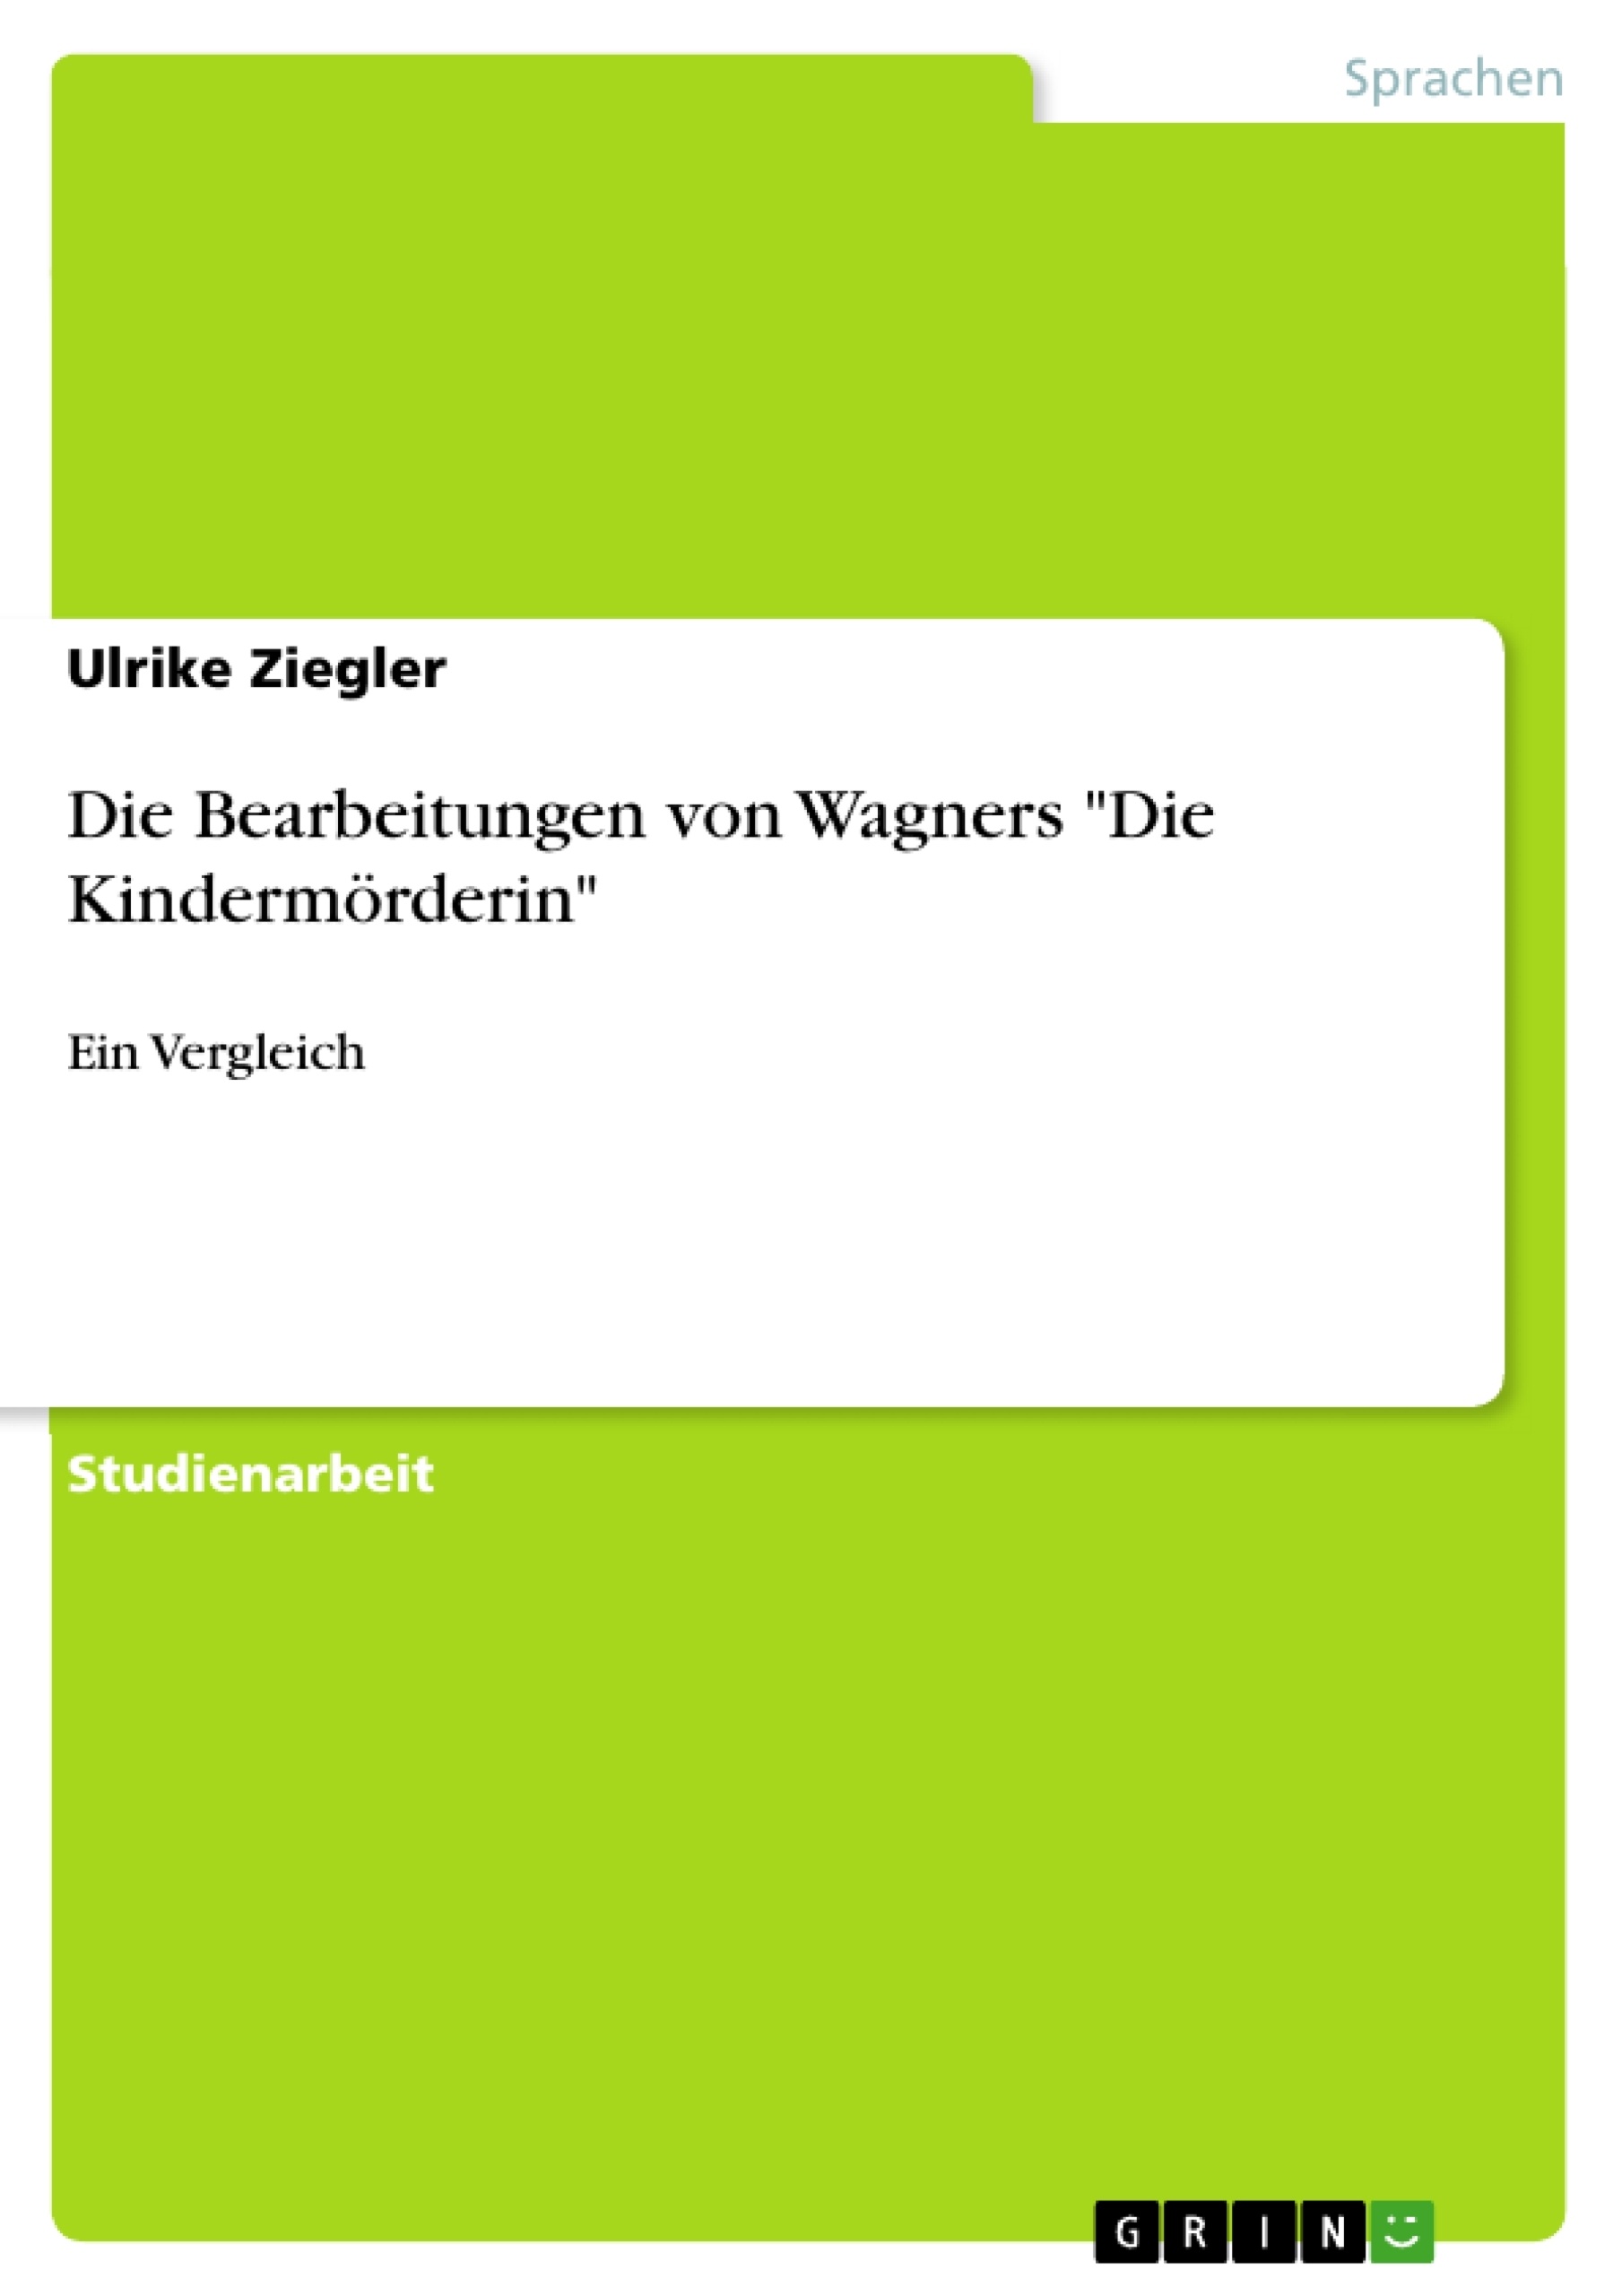 Titel: Die Bearbeitungen von Wagners "Die Kindermörderin"